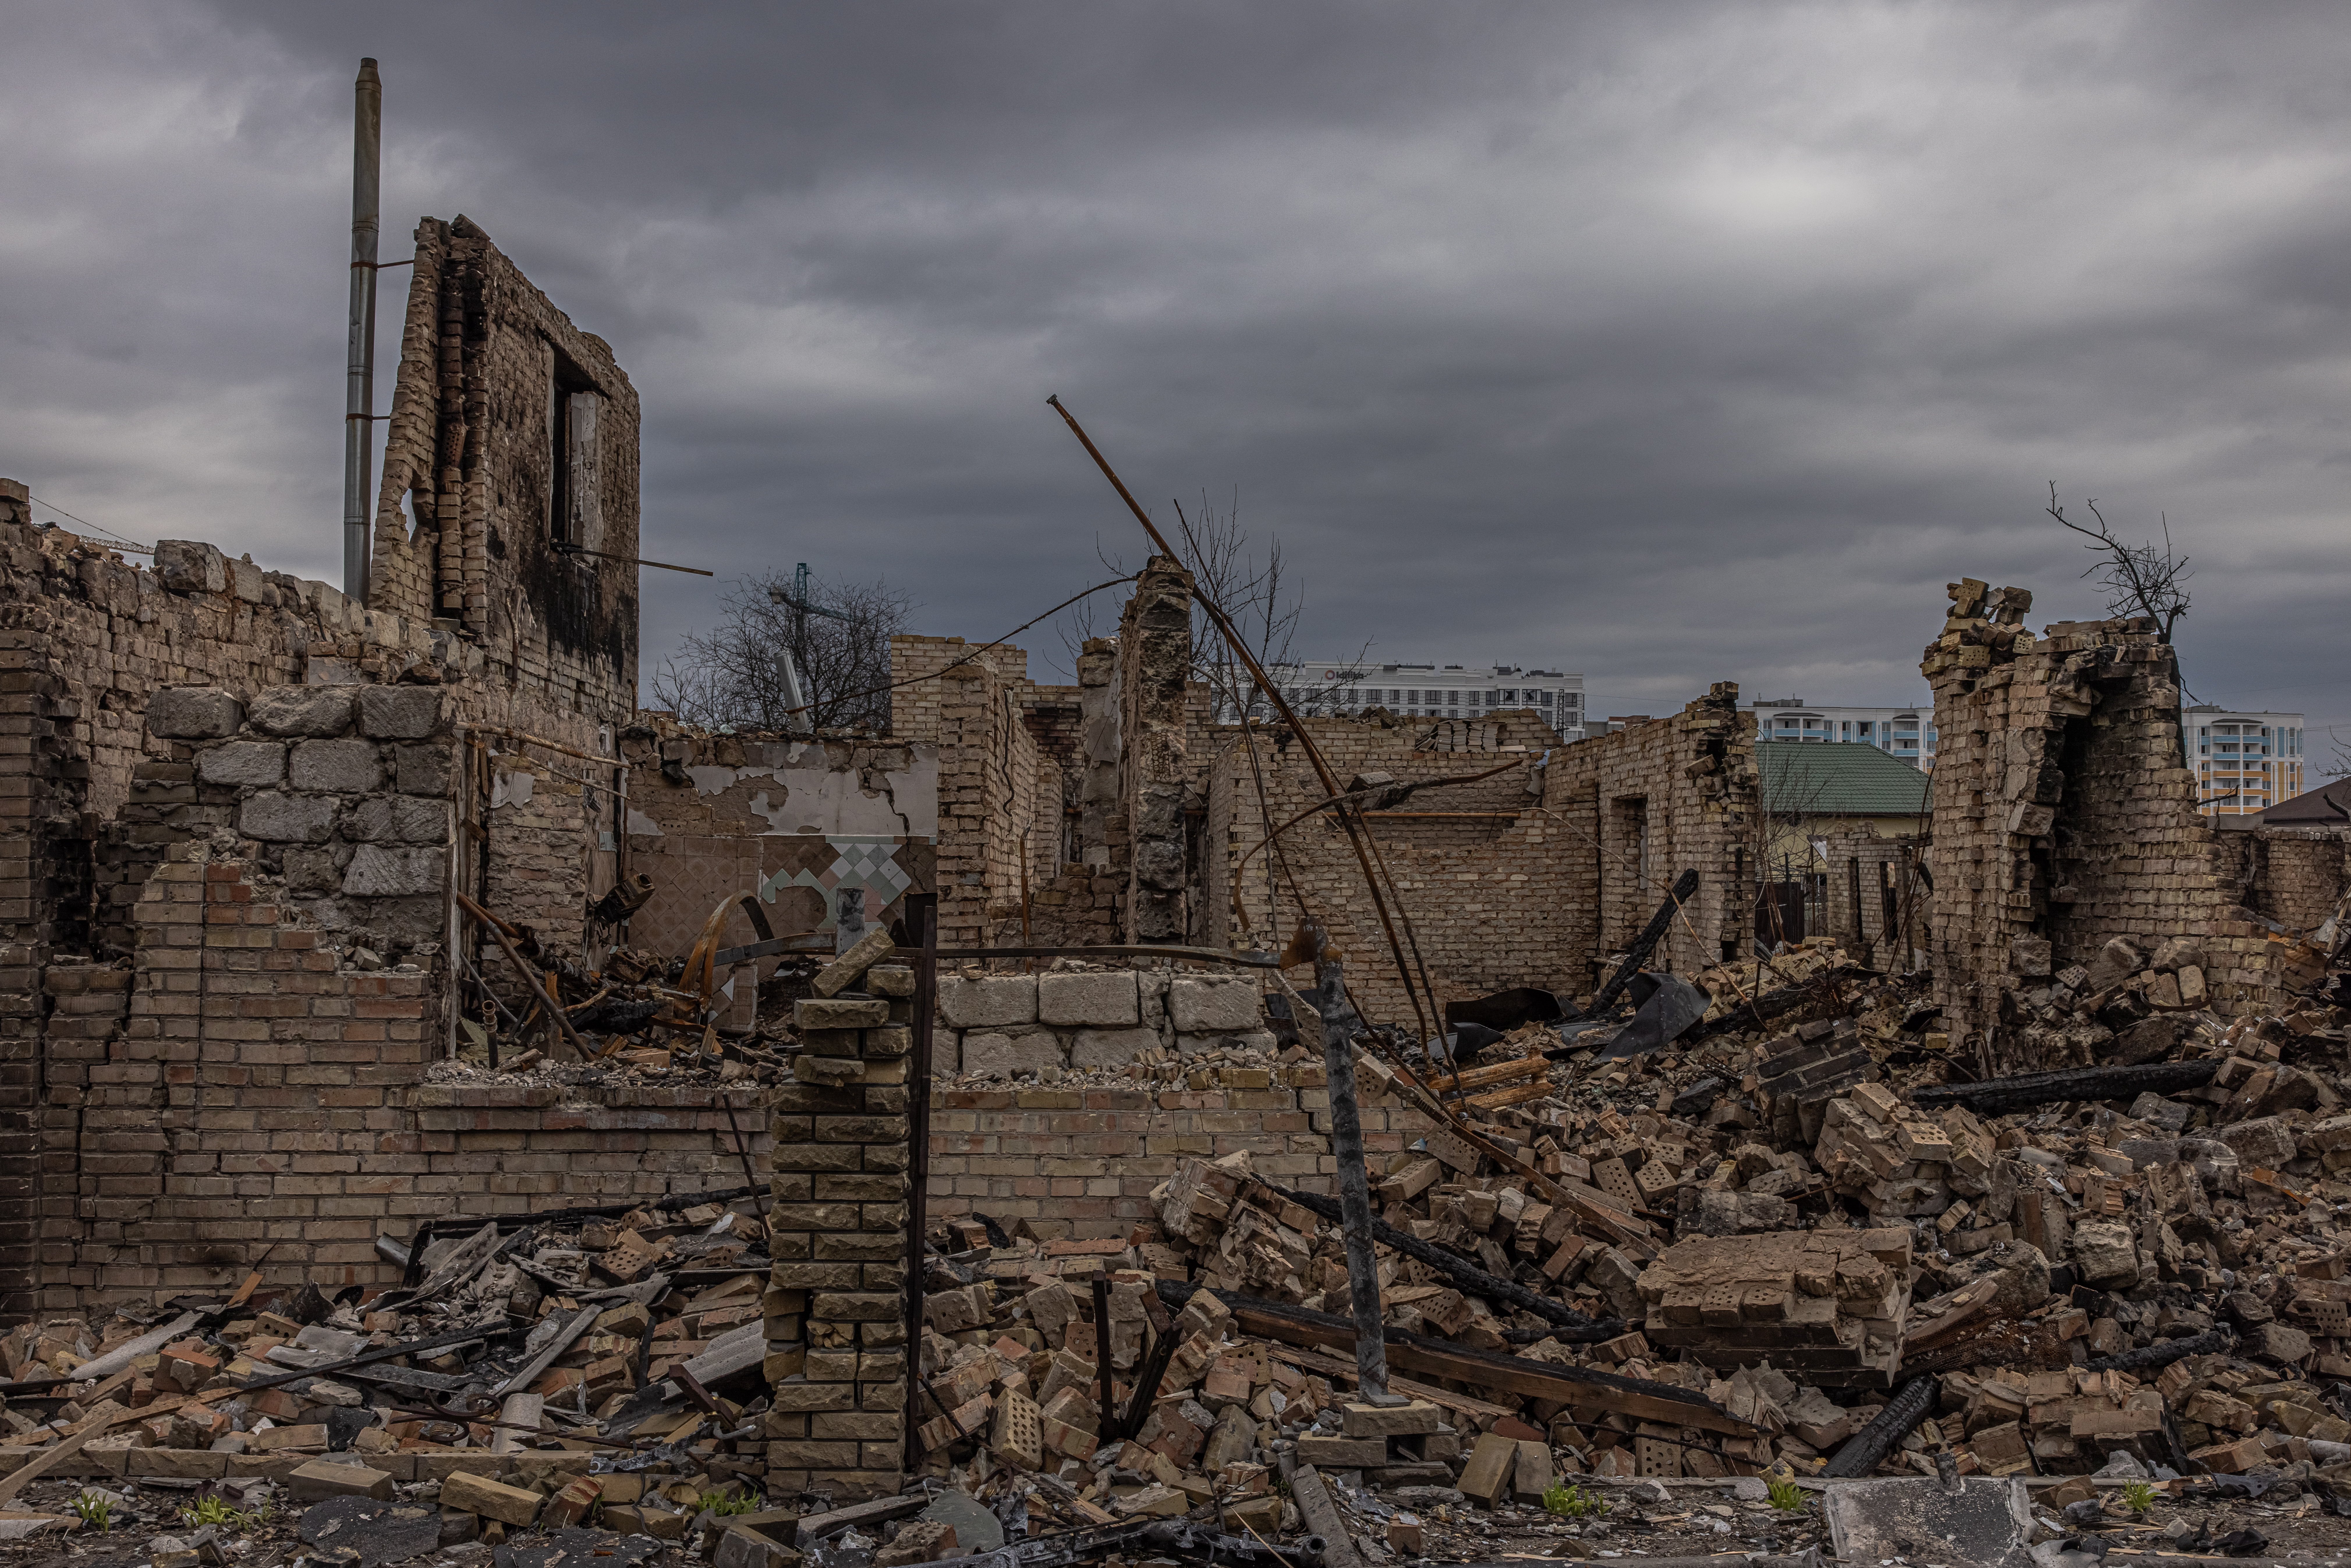 Ciutats destrossades a Ucraïna: quant de temps cal per reconstruir-les?